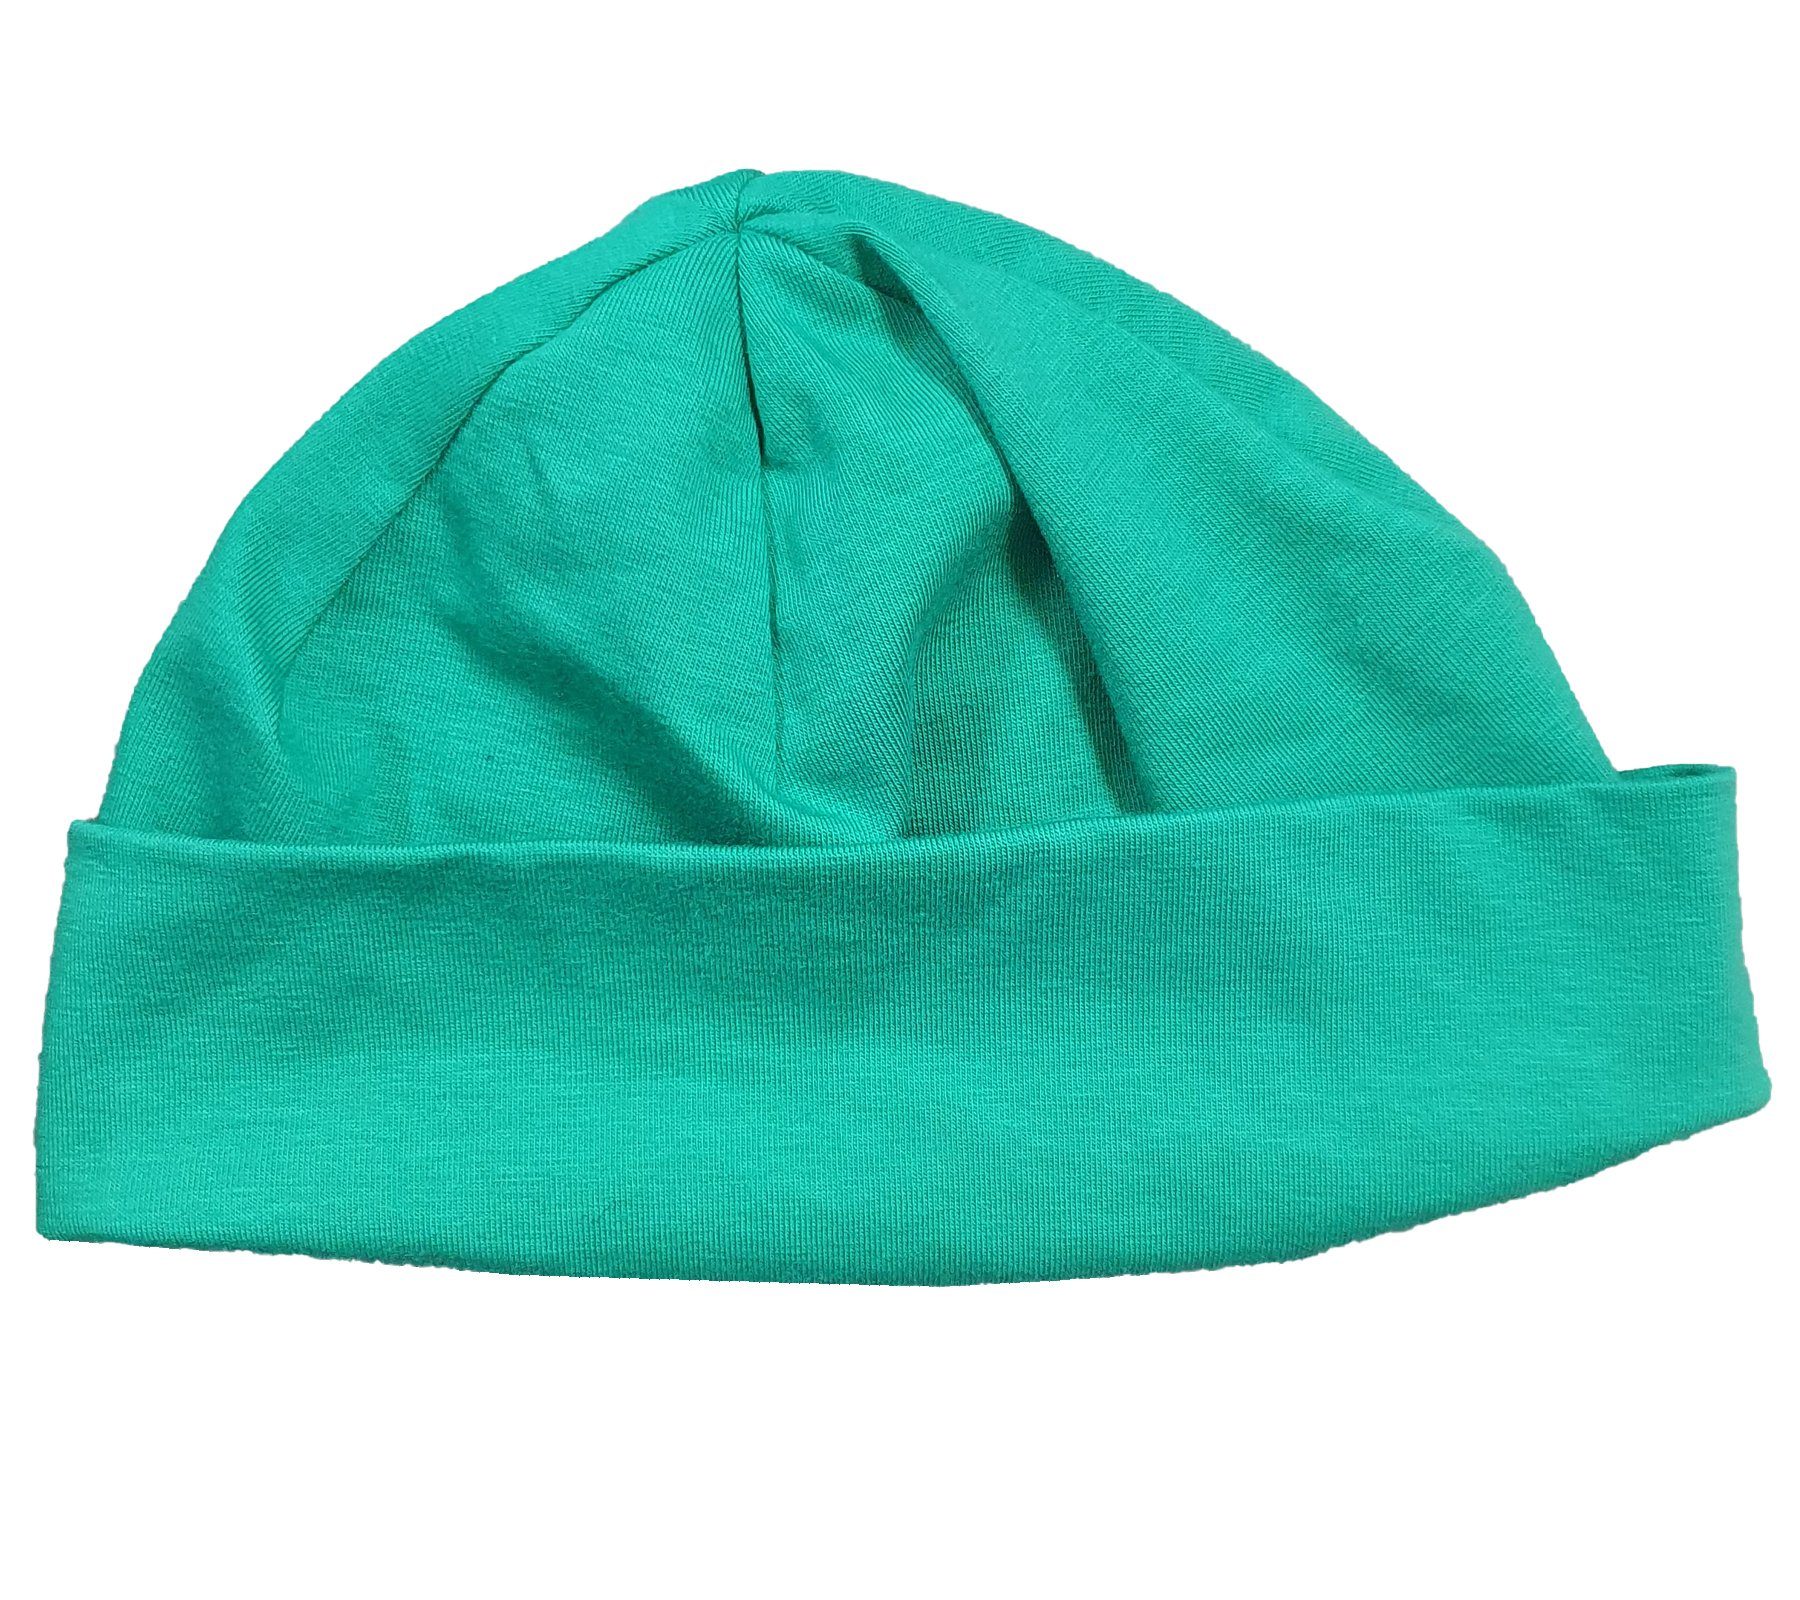 MAXIMO Jerseymütze maximo Kleinkinder Jersey-Mütze Kopfbedeckung Kinder weiche Umschlag-Mütze Grün